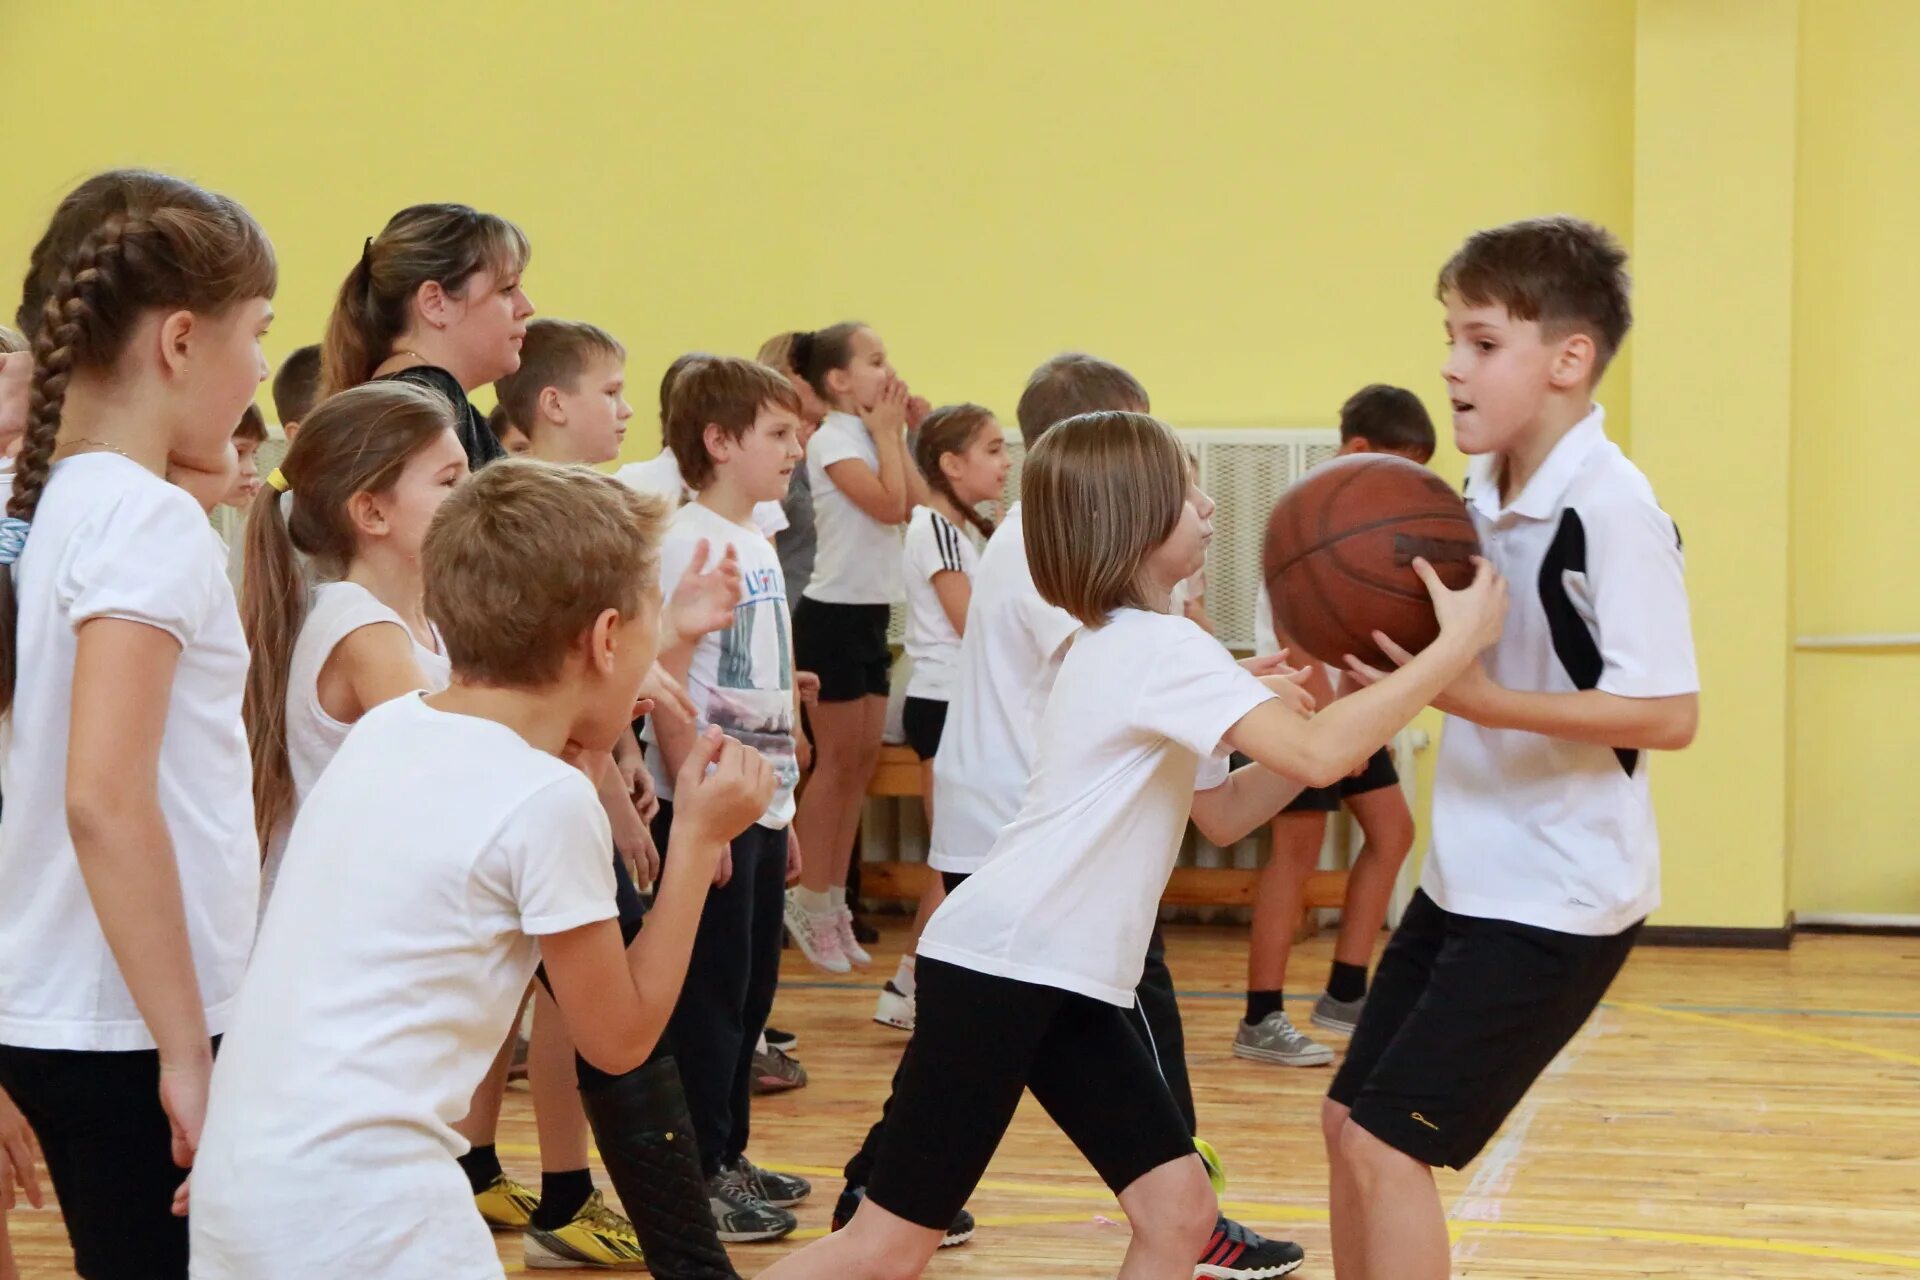 Спортивная школа проводит. Школьники на физкультуре. Физическая культура в школе. Спортивные занятия в школе. Спортивный кружок.